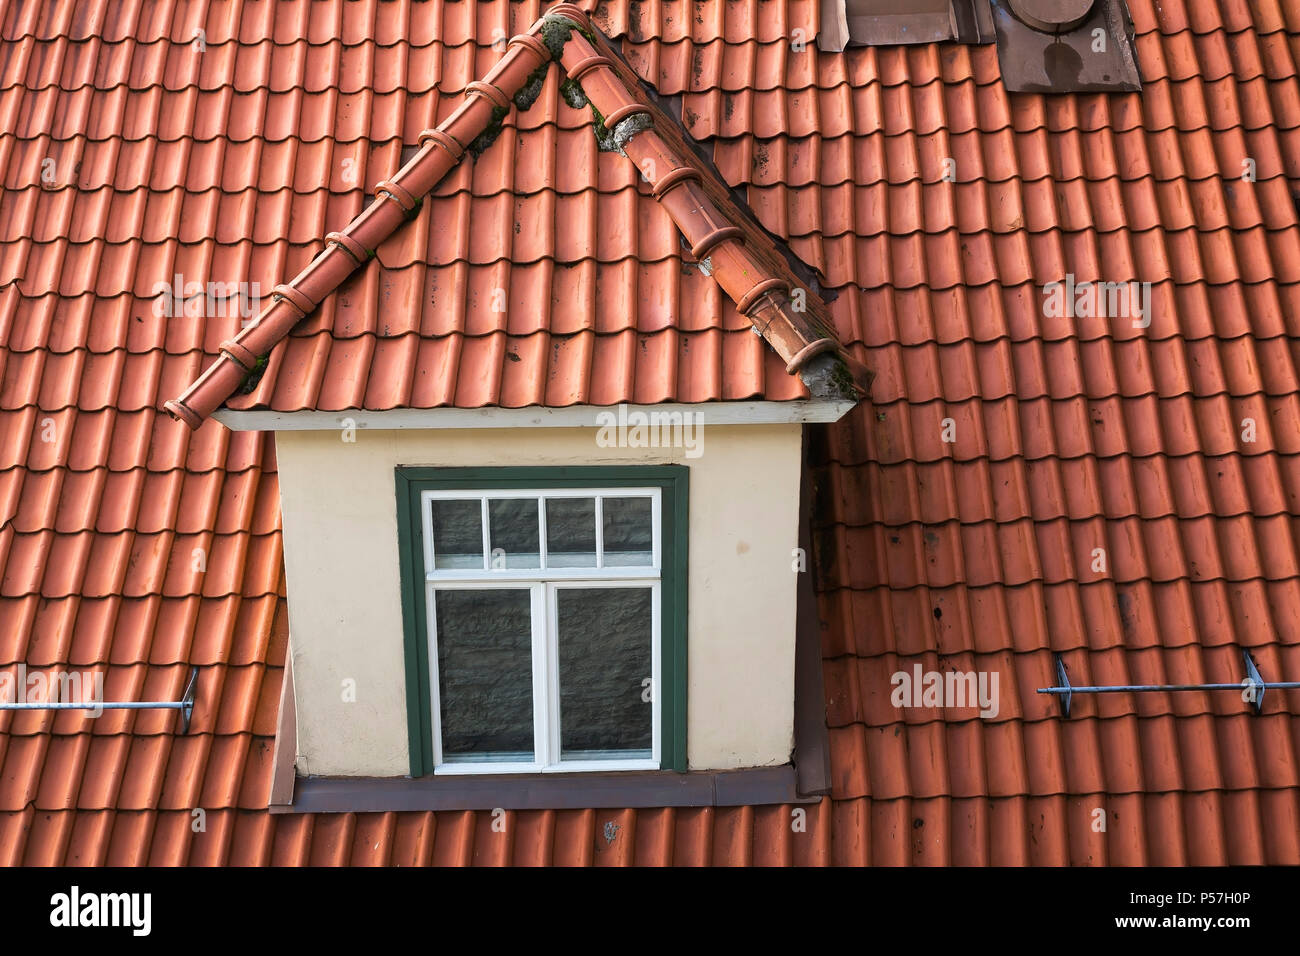 Vue de dessus de lucarne sur le toit en terre cuite ancien immeuble résidentiel de, Tallinn, Estonie Banque D'Images